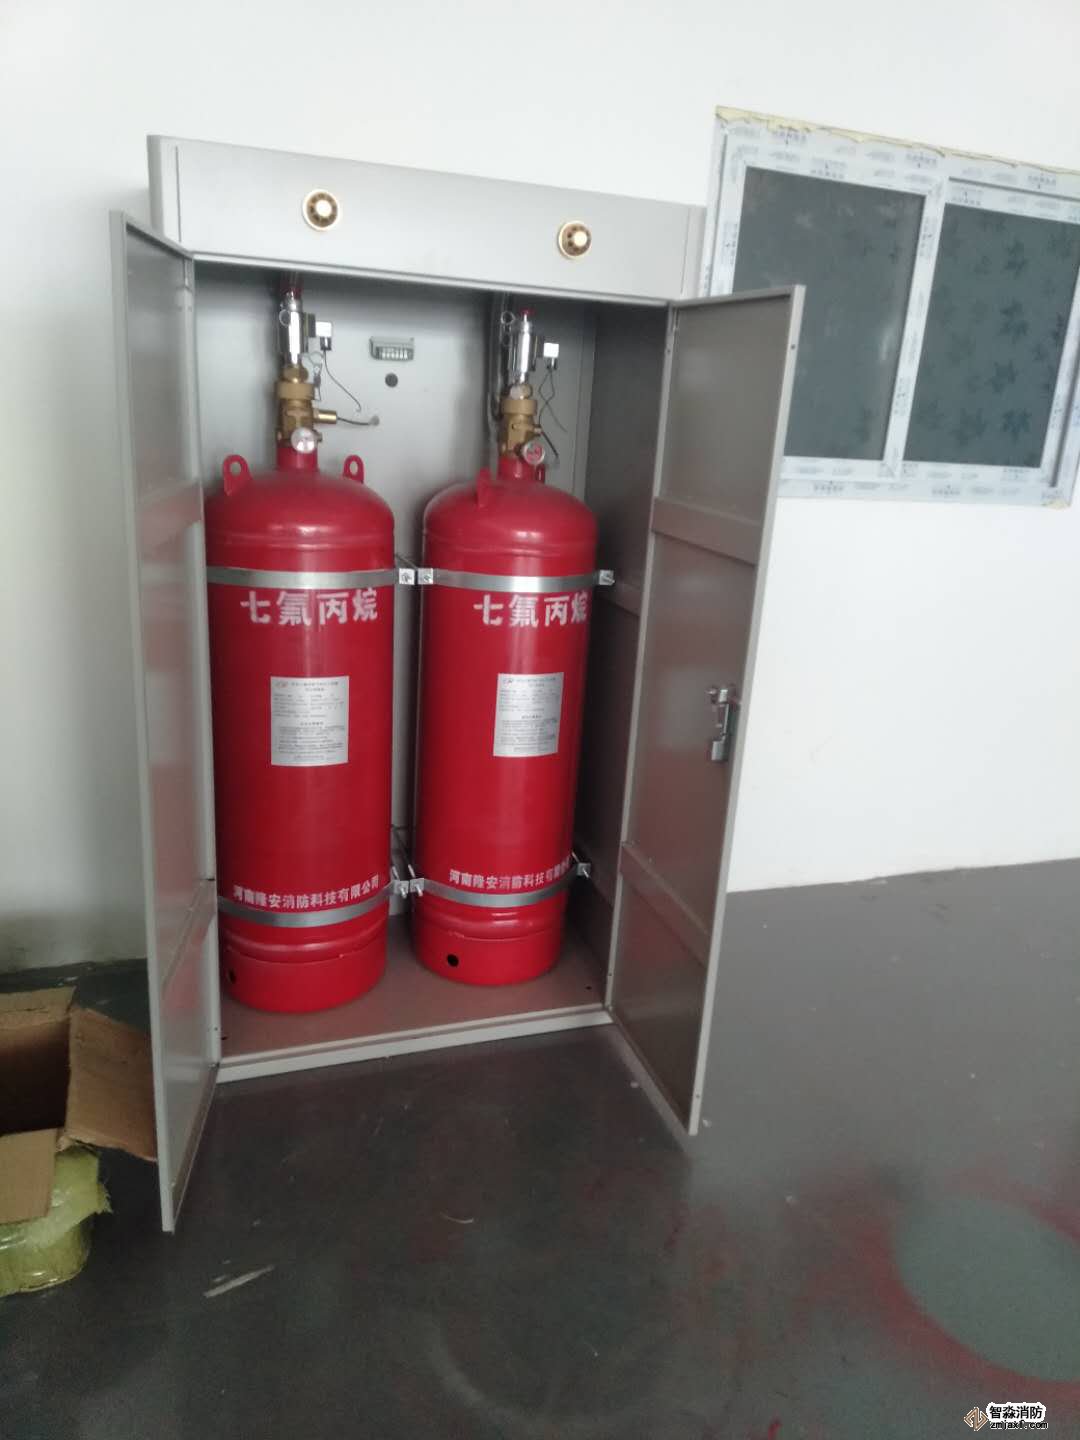 气体灭火系统组件及安装